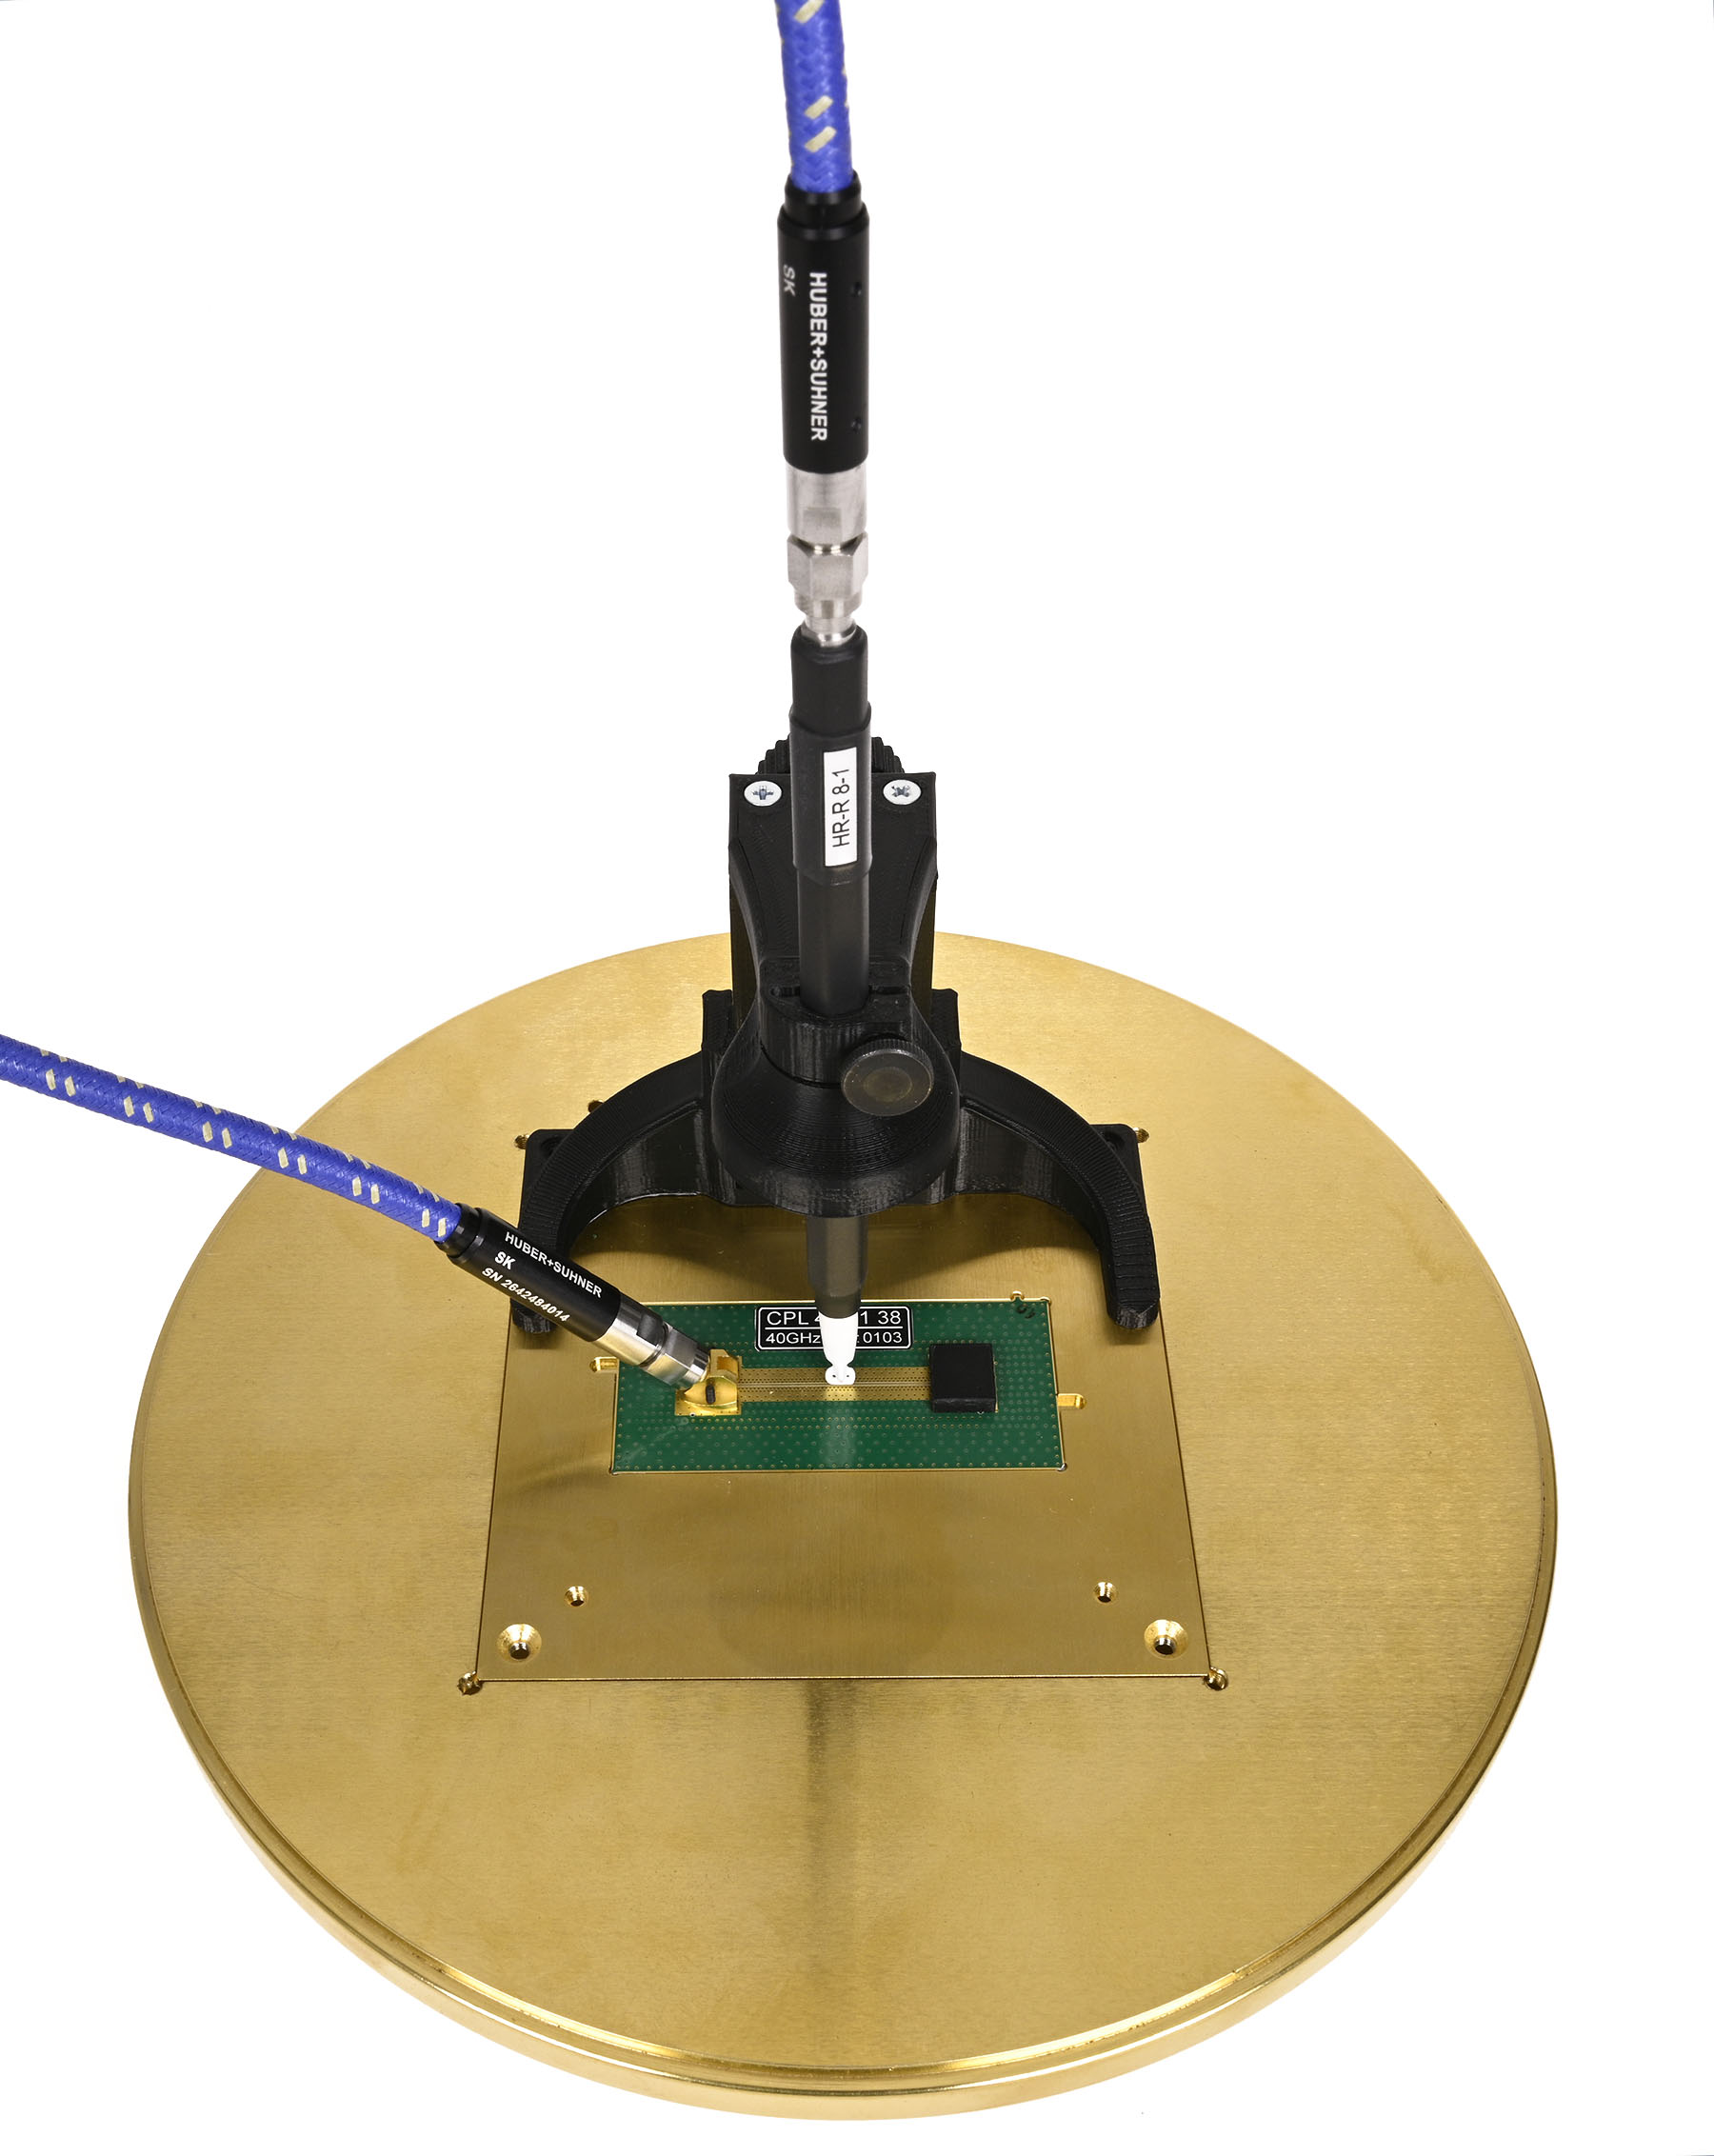 Messaufbau Magnetfeldsonde HR-R 8-1 auf 40 GHz Koplanarleitung